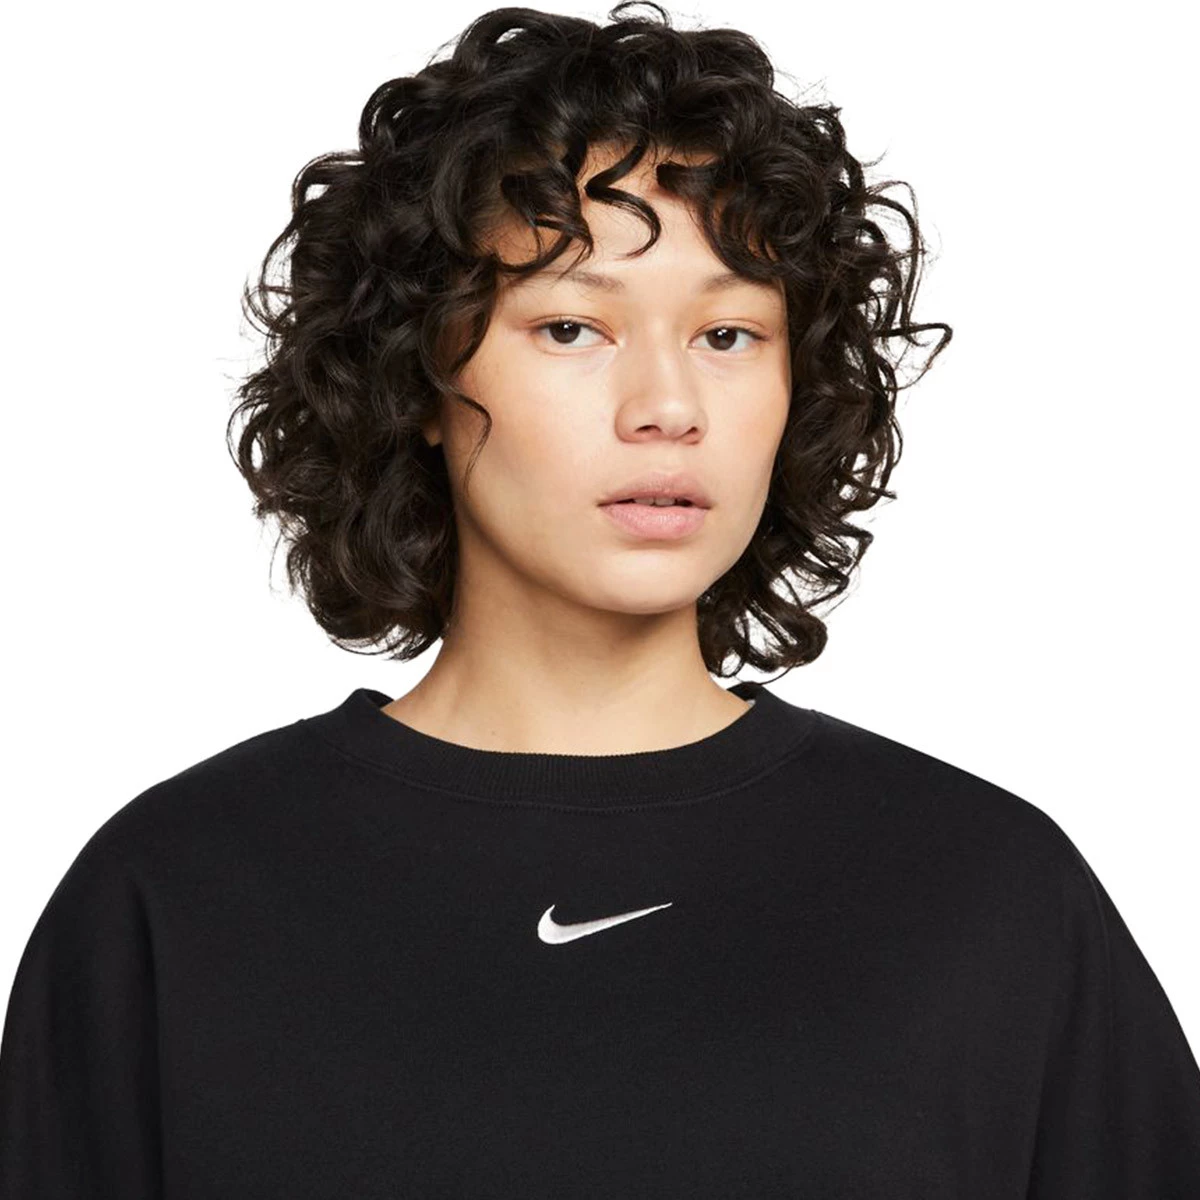 Sweatshirt Nike Sportswear Phoenix Fleece Black - Fútbol Emotion